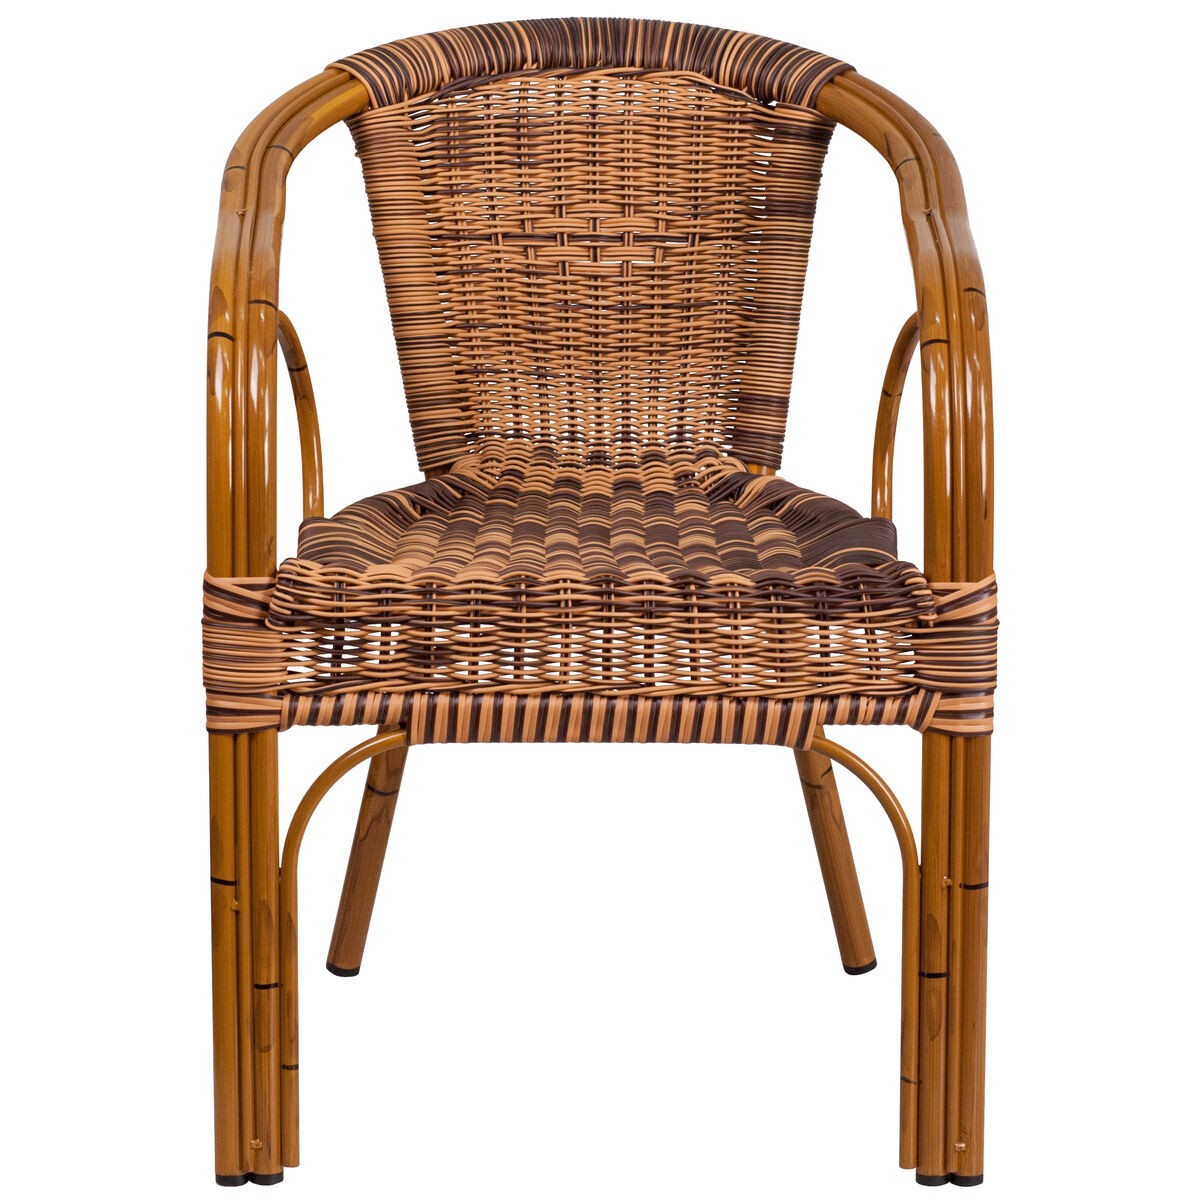 Brown rattan bamboo chair sda ad632009d 1 gg 1